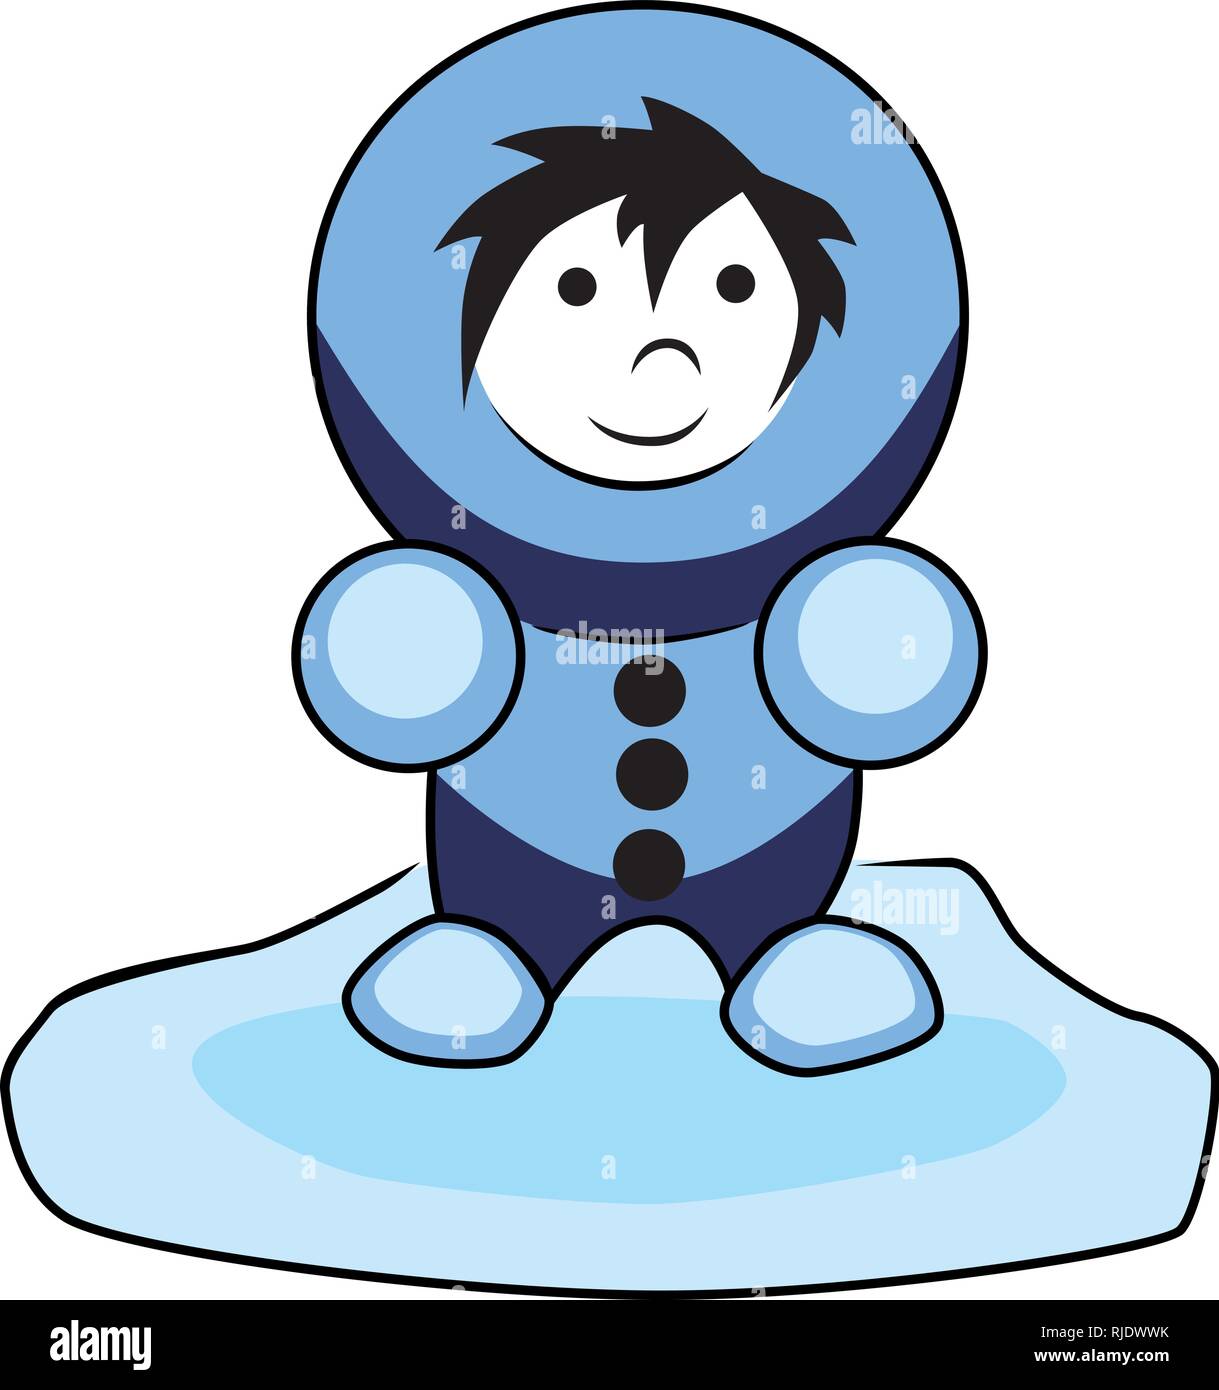 Enfant esquimau dans un manteau bleu sur la banquise. L'illustration est également disponible en tant que graphique de scénario. Illustration de Vecteur